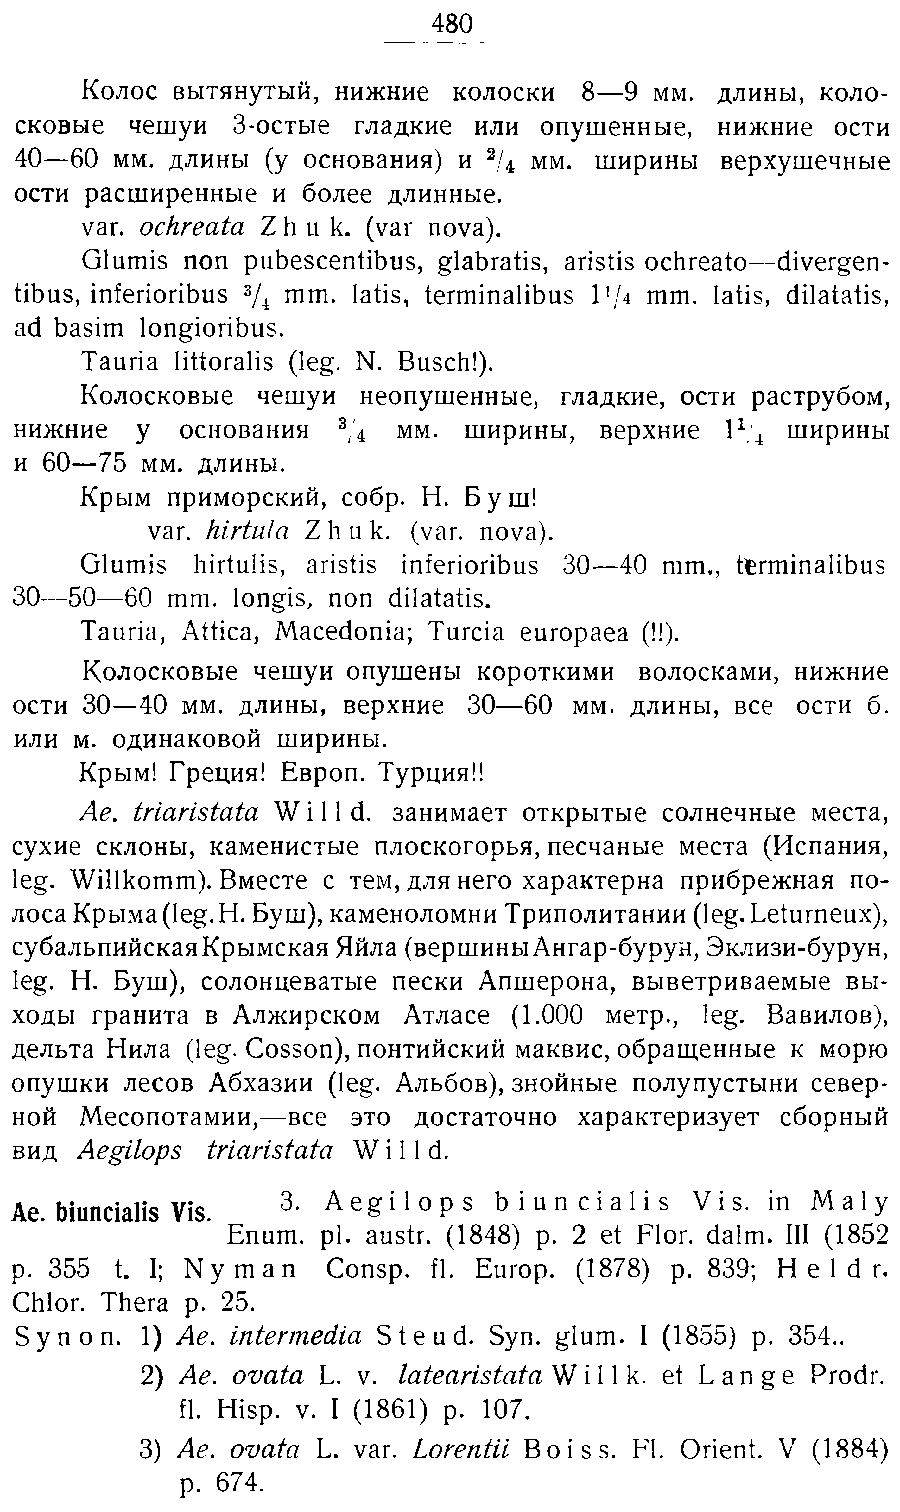 https://forum.plantarium.ru/misc.php?action=pun_attachment&amp;item=27156